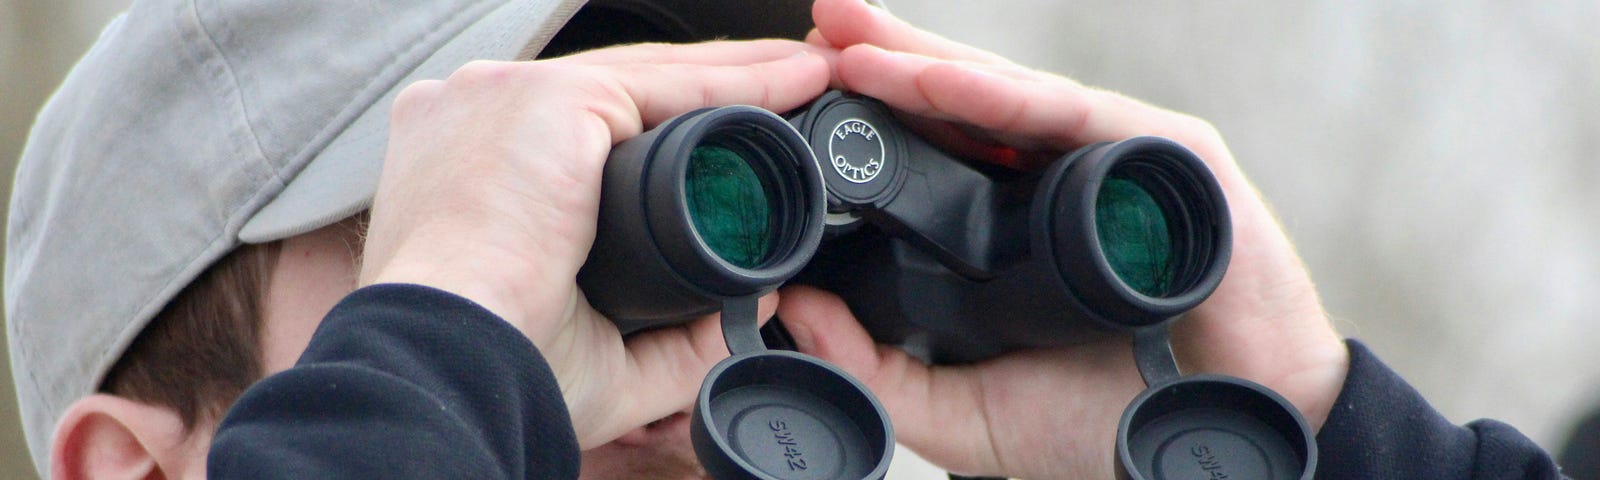 Man staring through binoculars.